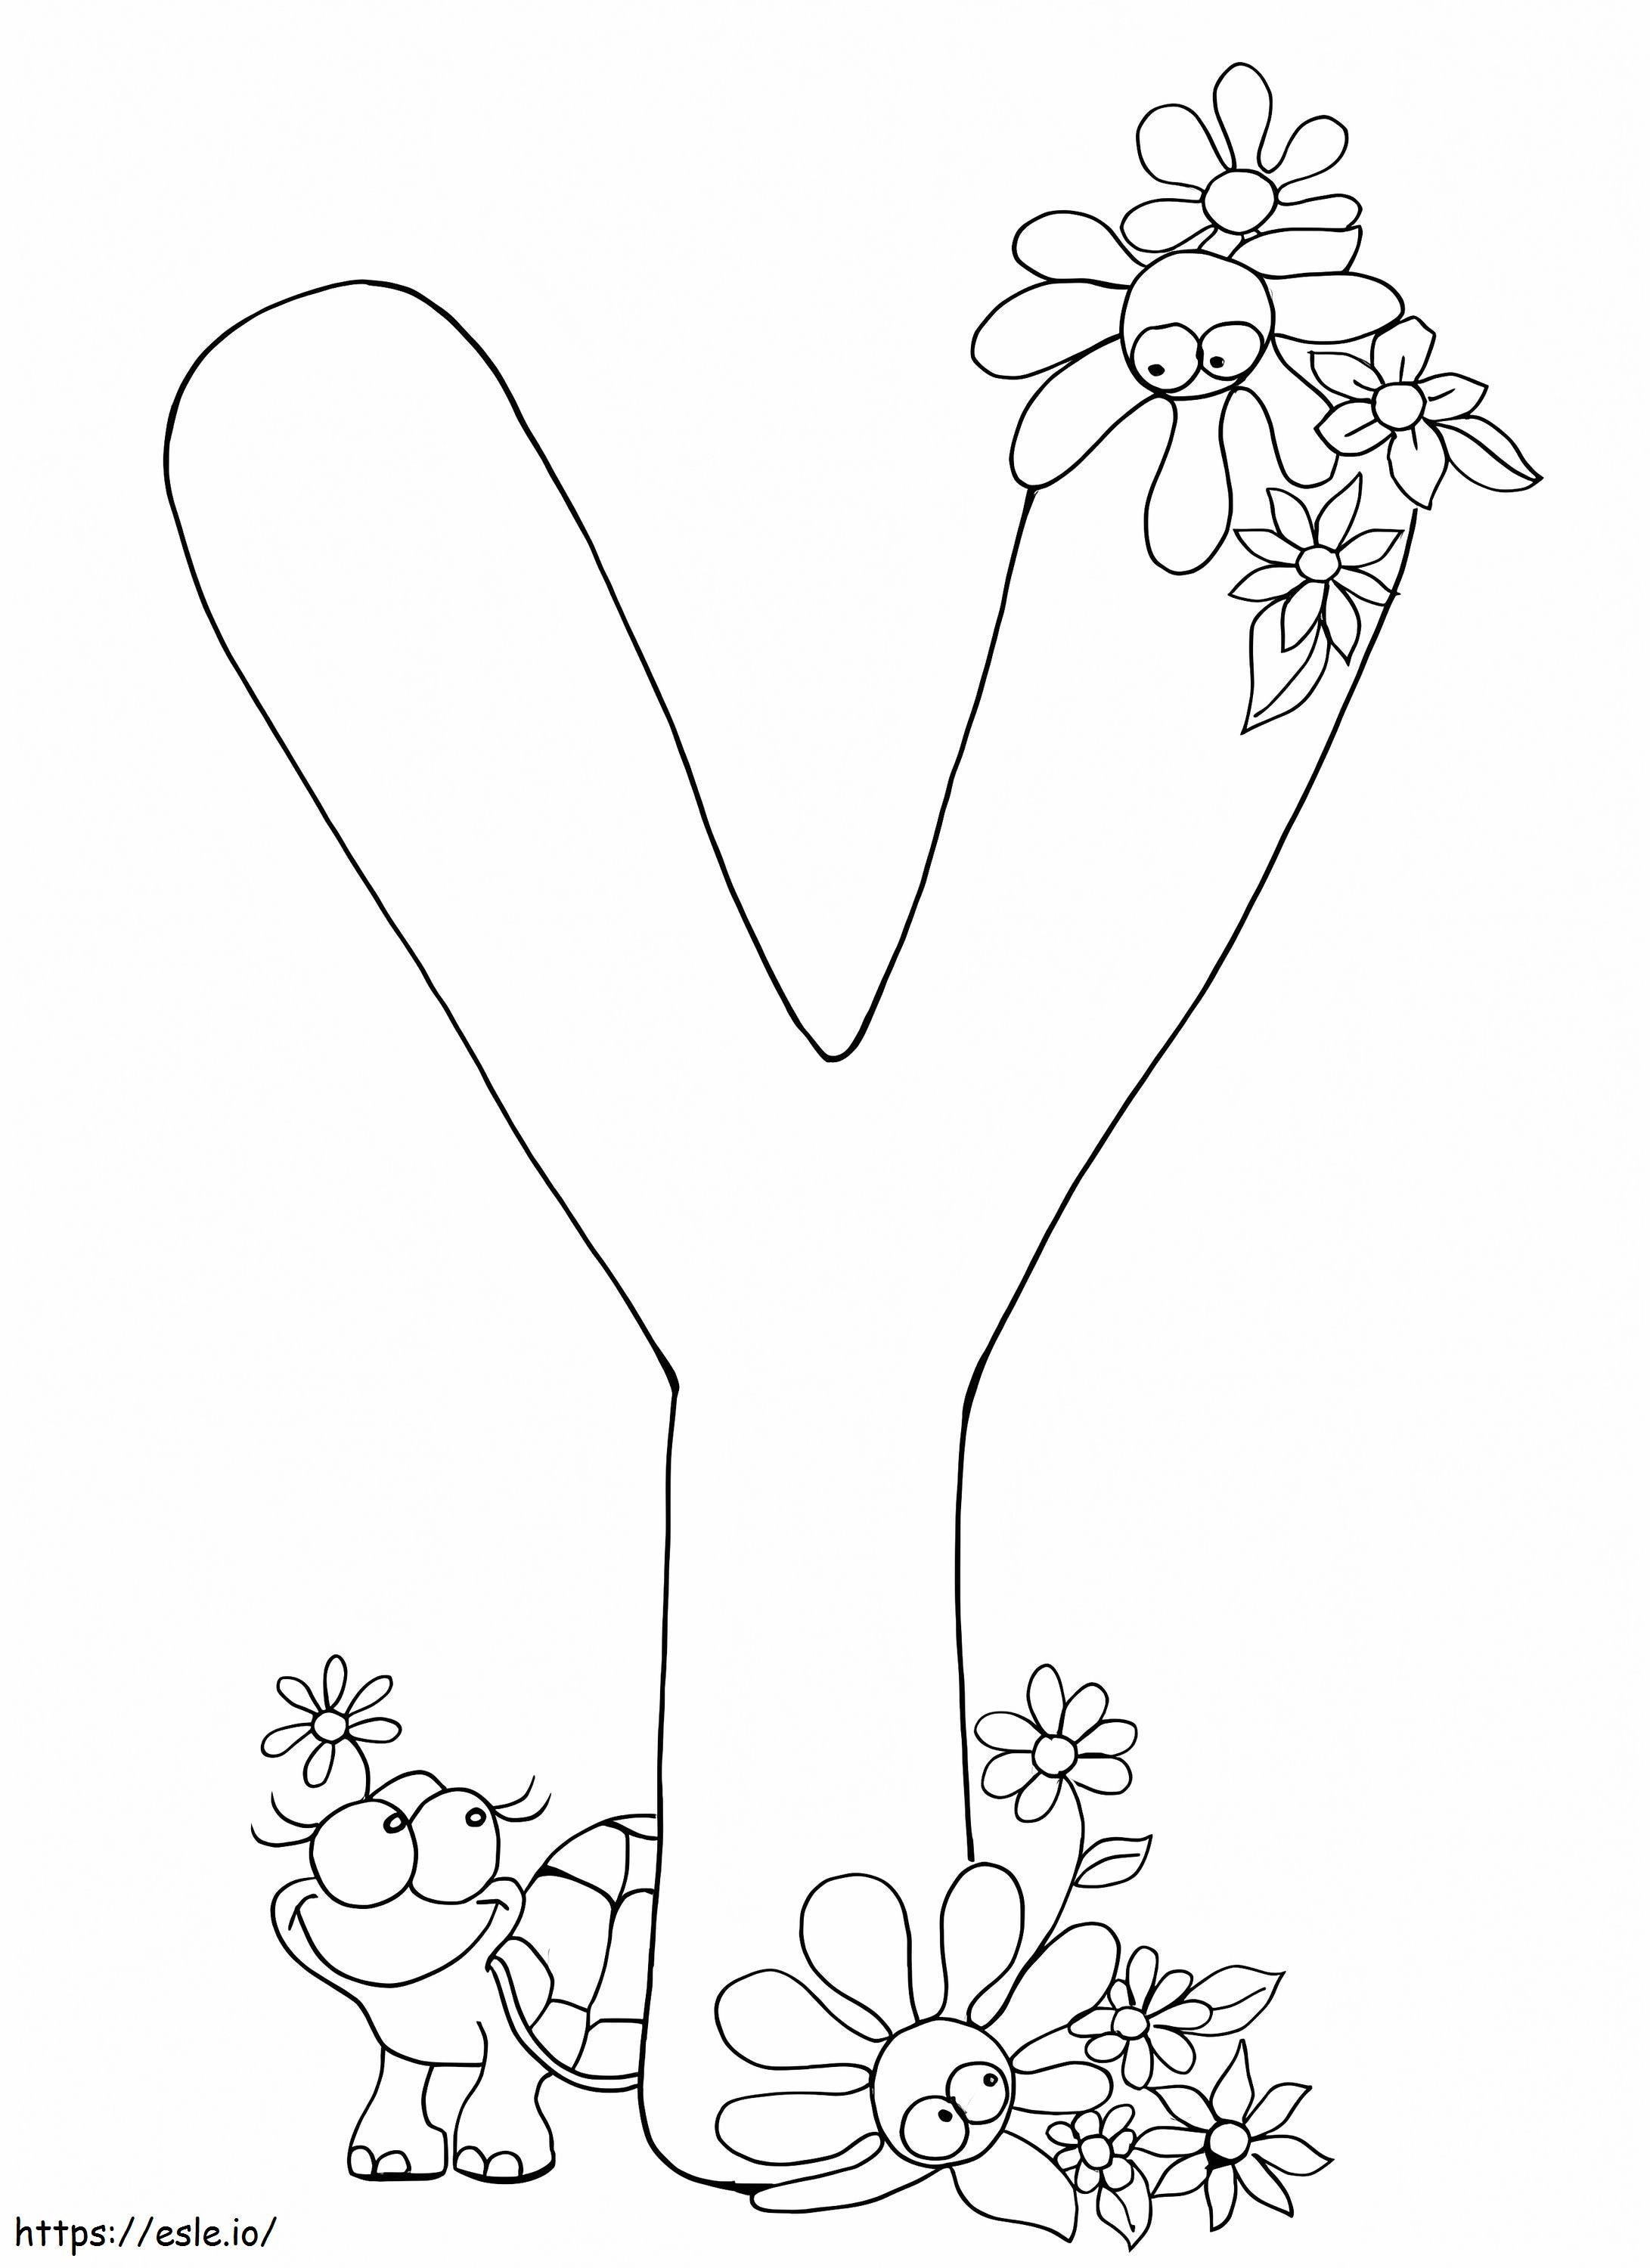 Buchstabe Y mit Schildkröte und Blume ausmalbilder